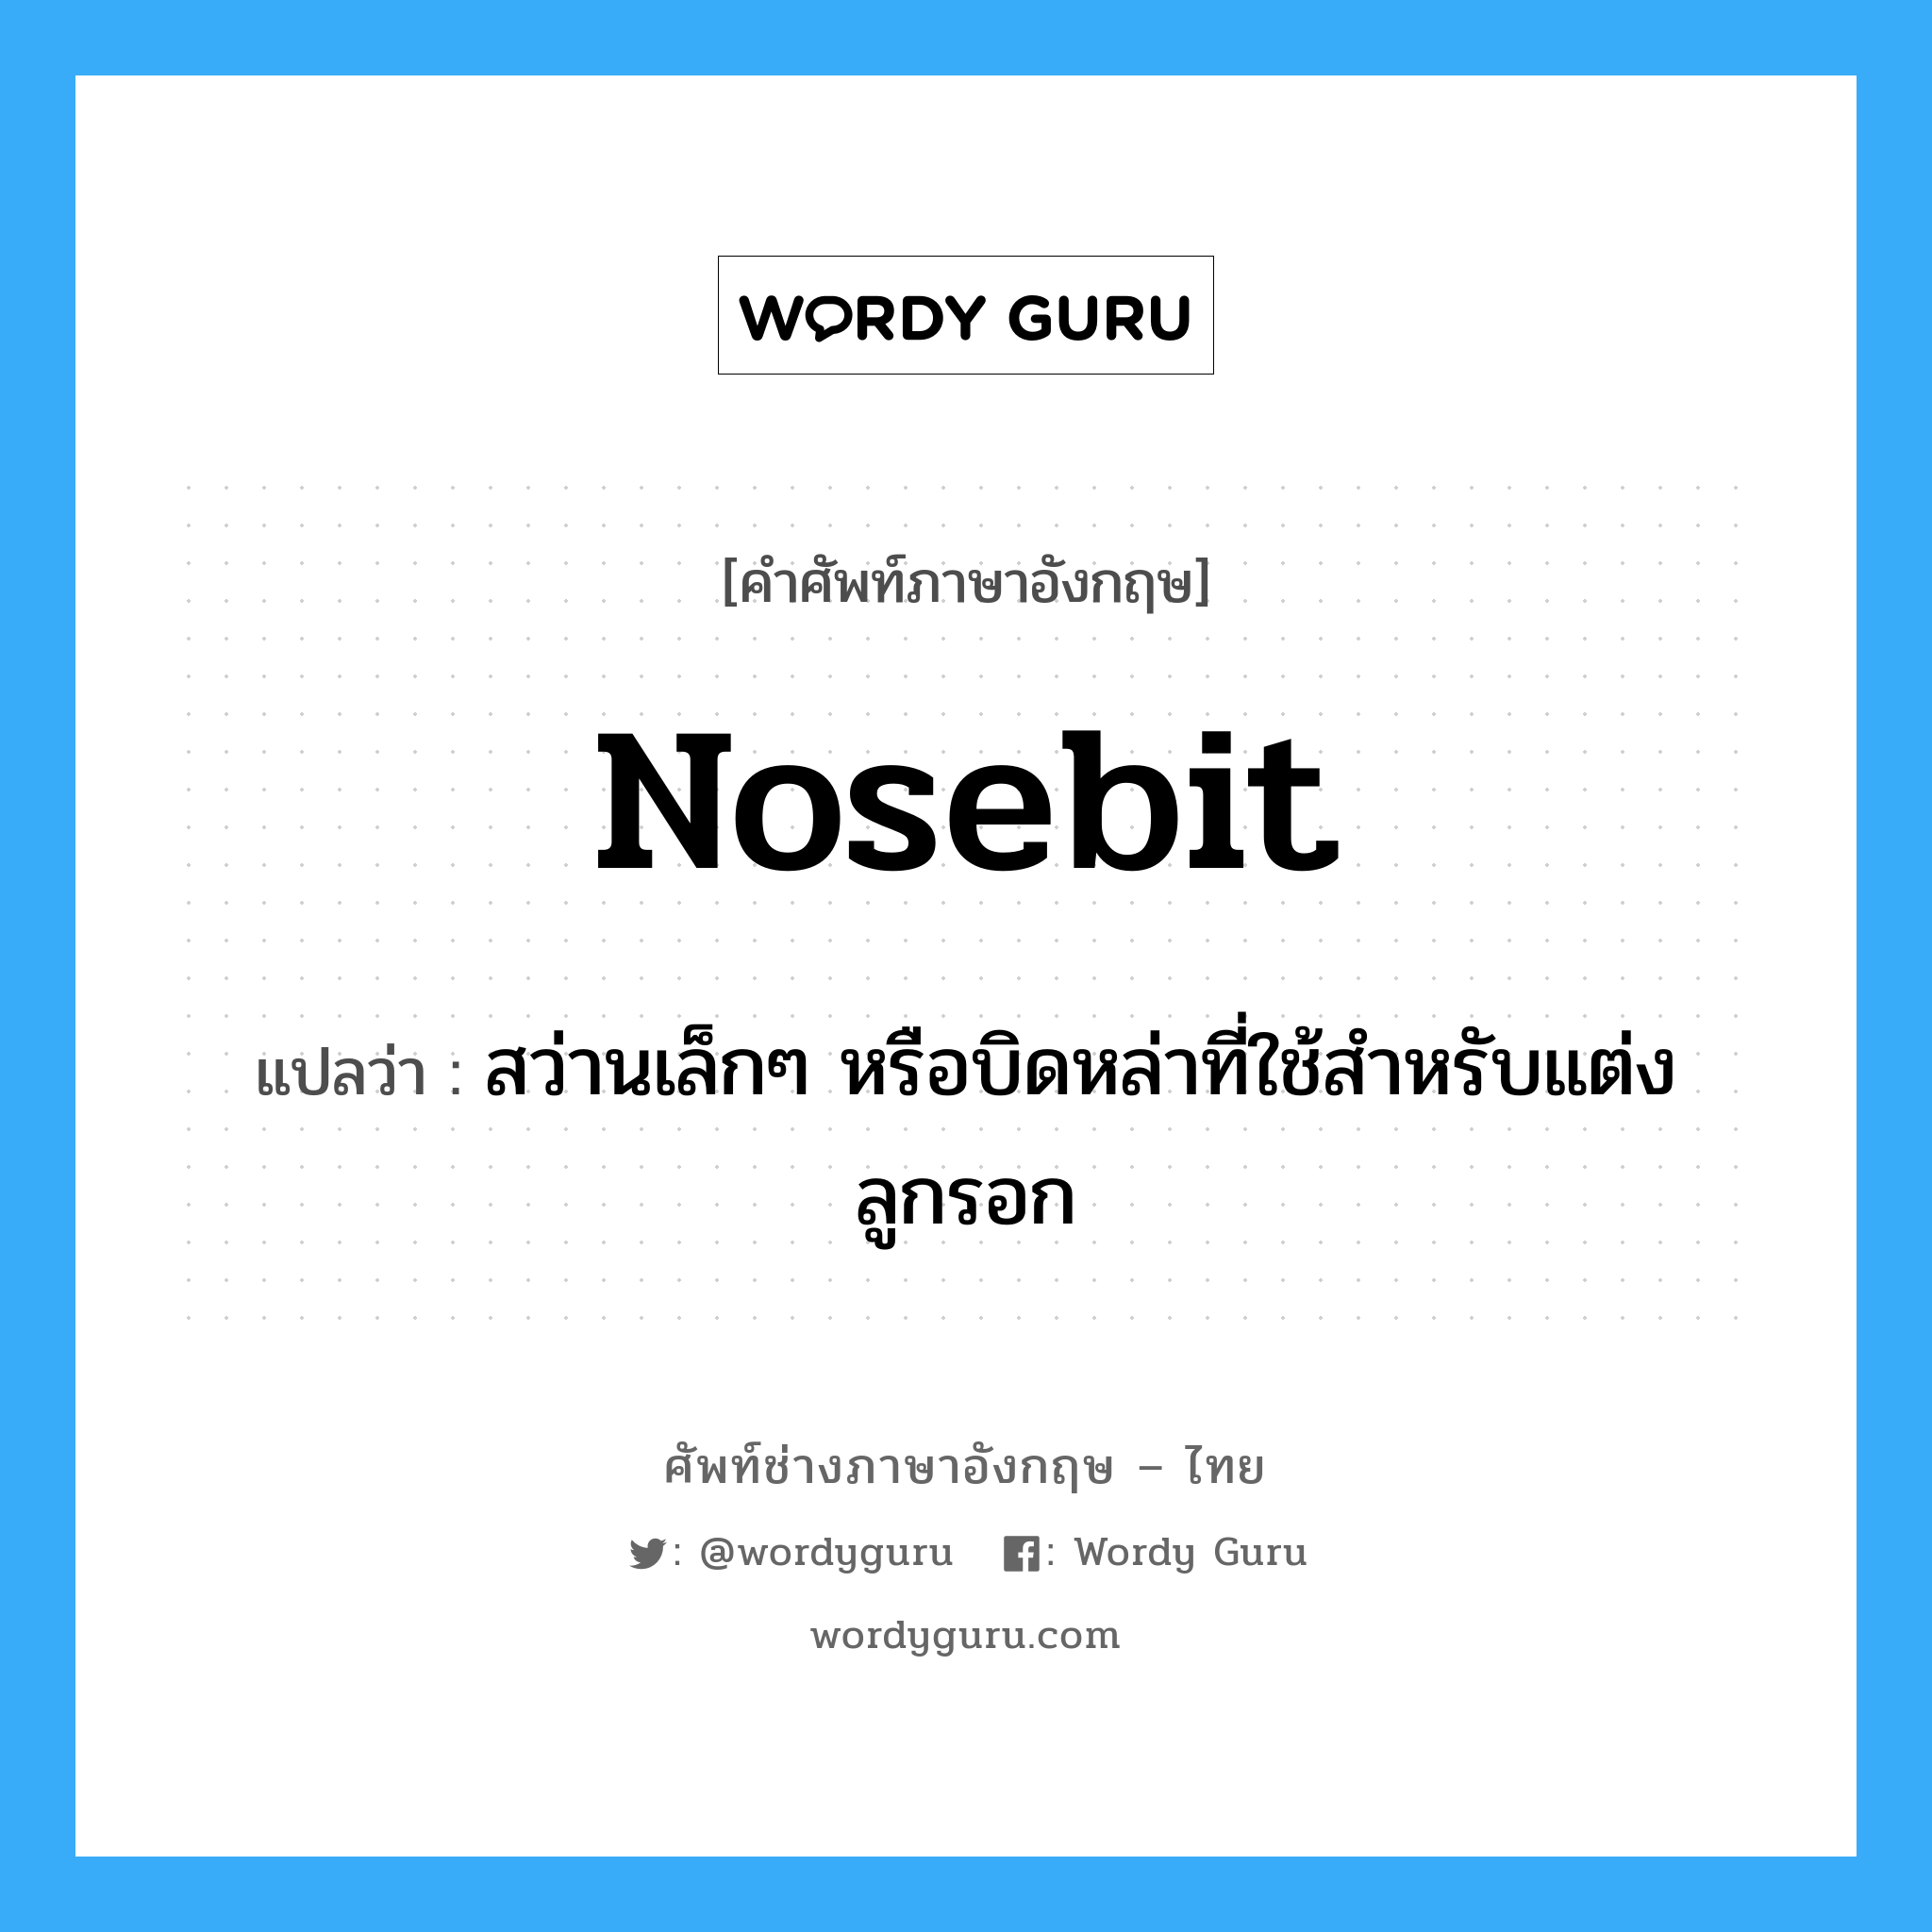 nosebit แปลว่า?, คำศัพท์ช่างภาษาอังกฤษ - ไทย nosebit คำศัพท์ภาษาอังกฤษ nosebit แปลว่า สว่านเล็กๆ หรือบิดหล่าที่ใช้สำหรับแต่งลูกรอก